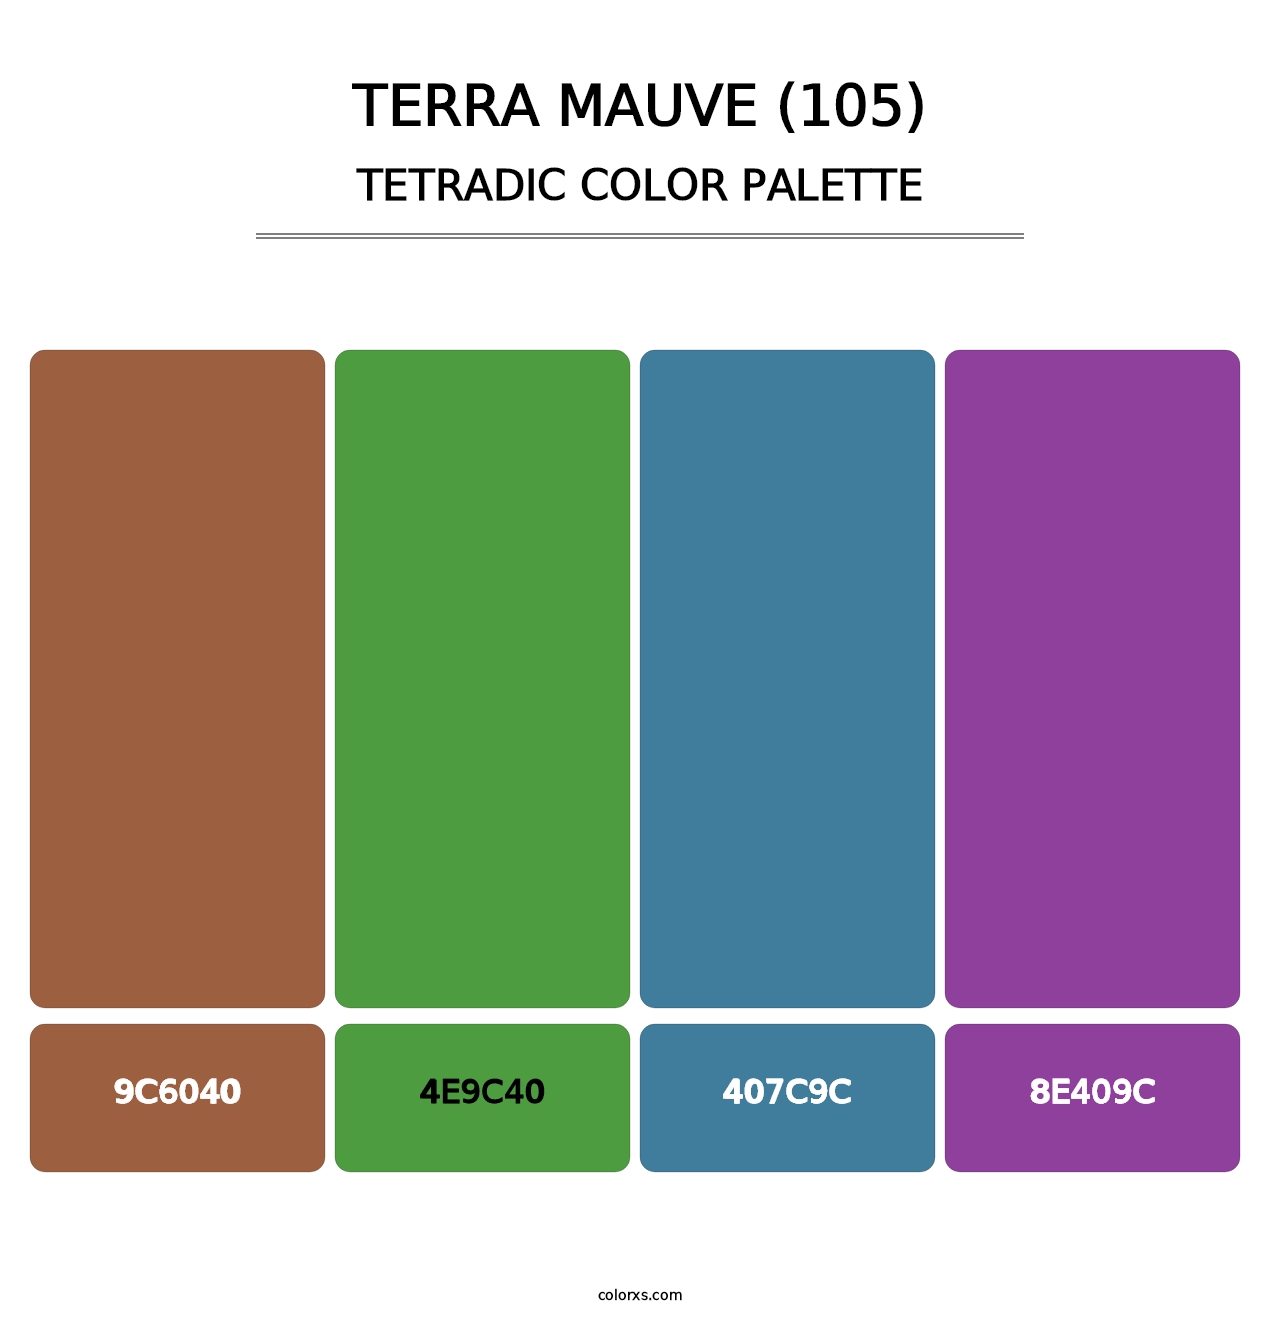 Terra Mauve (105) - Tetradic Color Palette